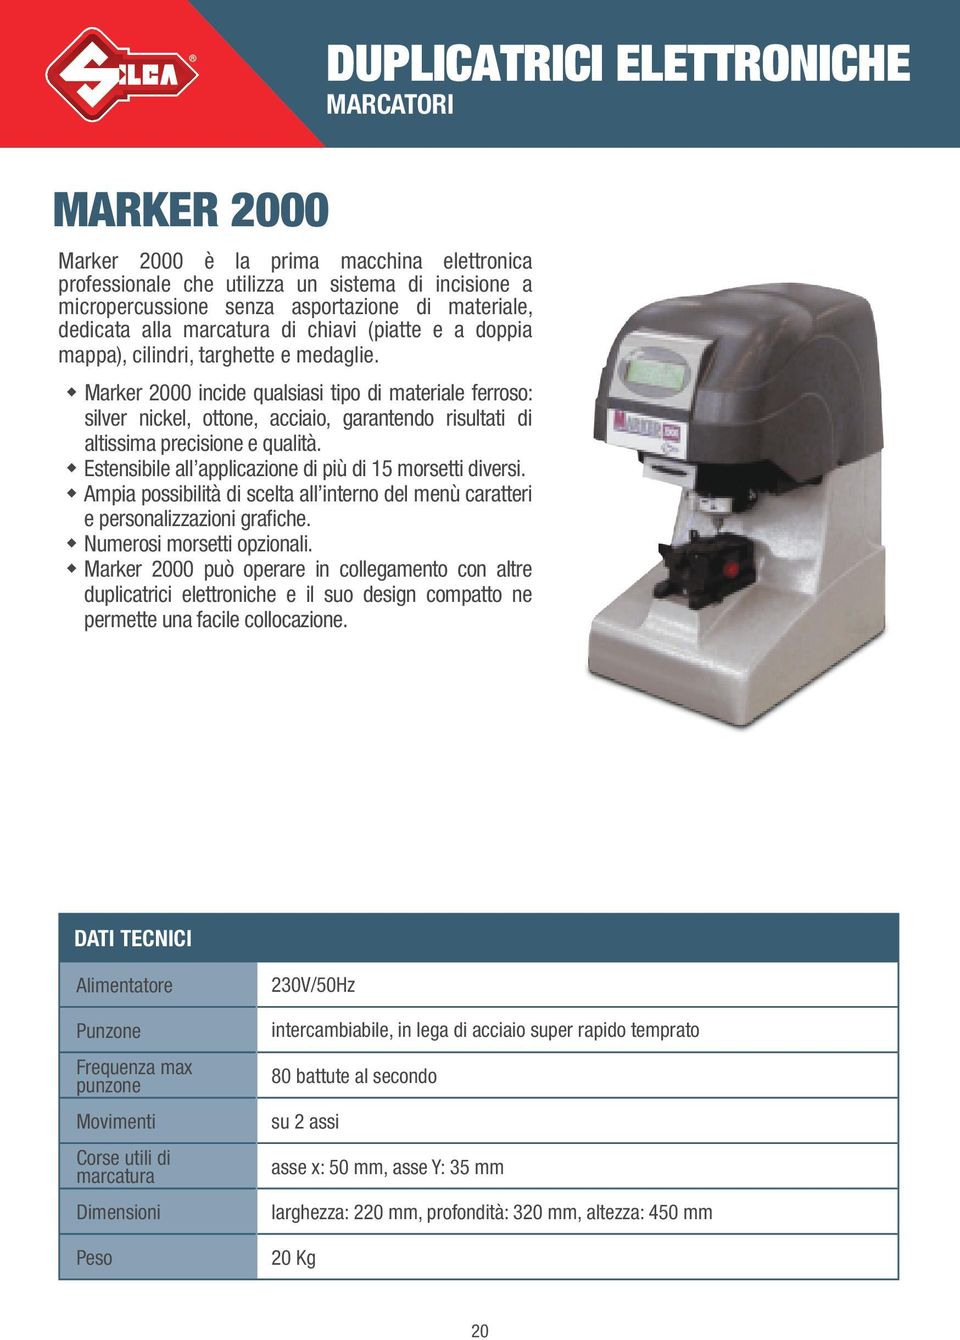 Marker 2000 incide qualsiasi tipo di materiale ferroso: silver nickel, ottone, acciaio, garantendo risultati di altissima precisione e qualità.